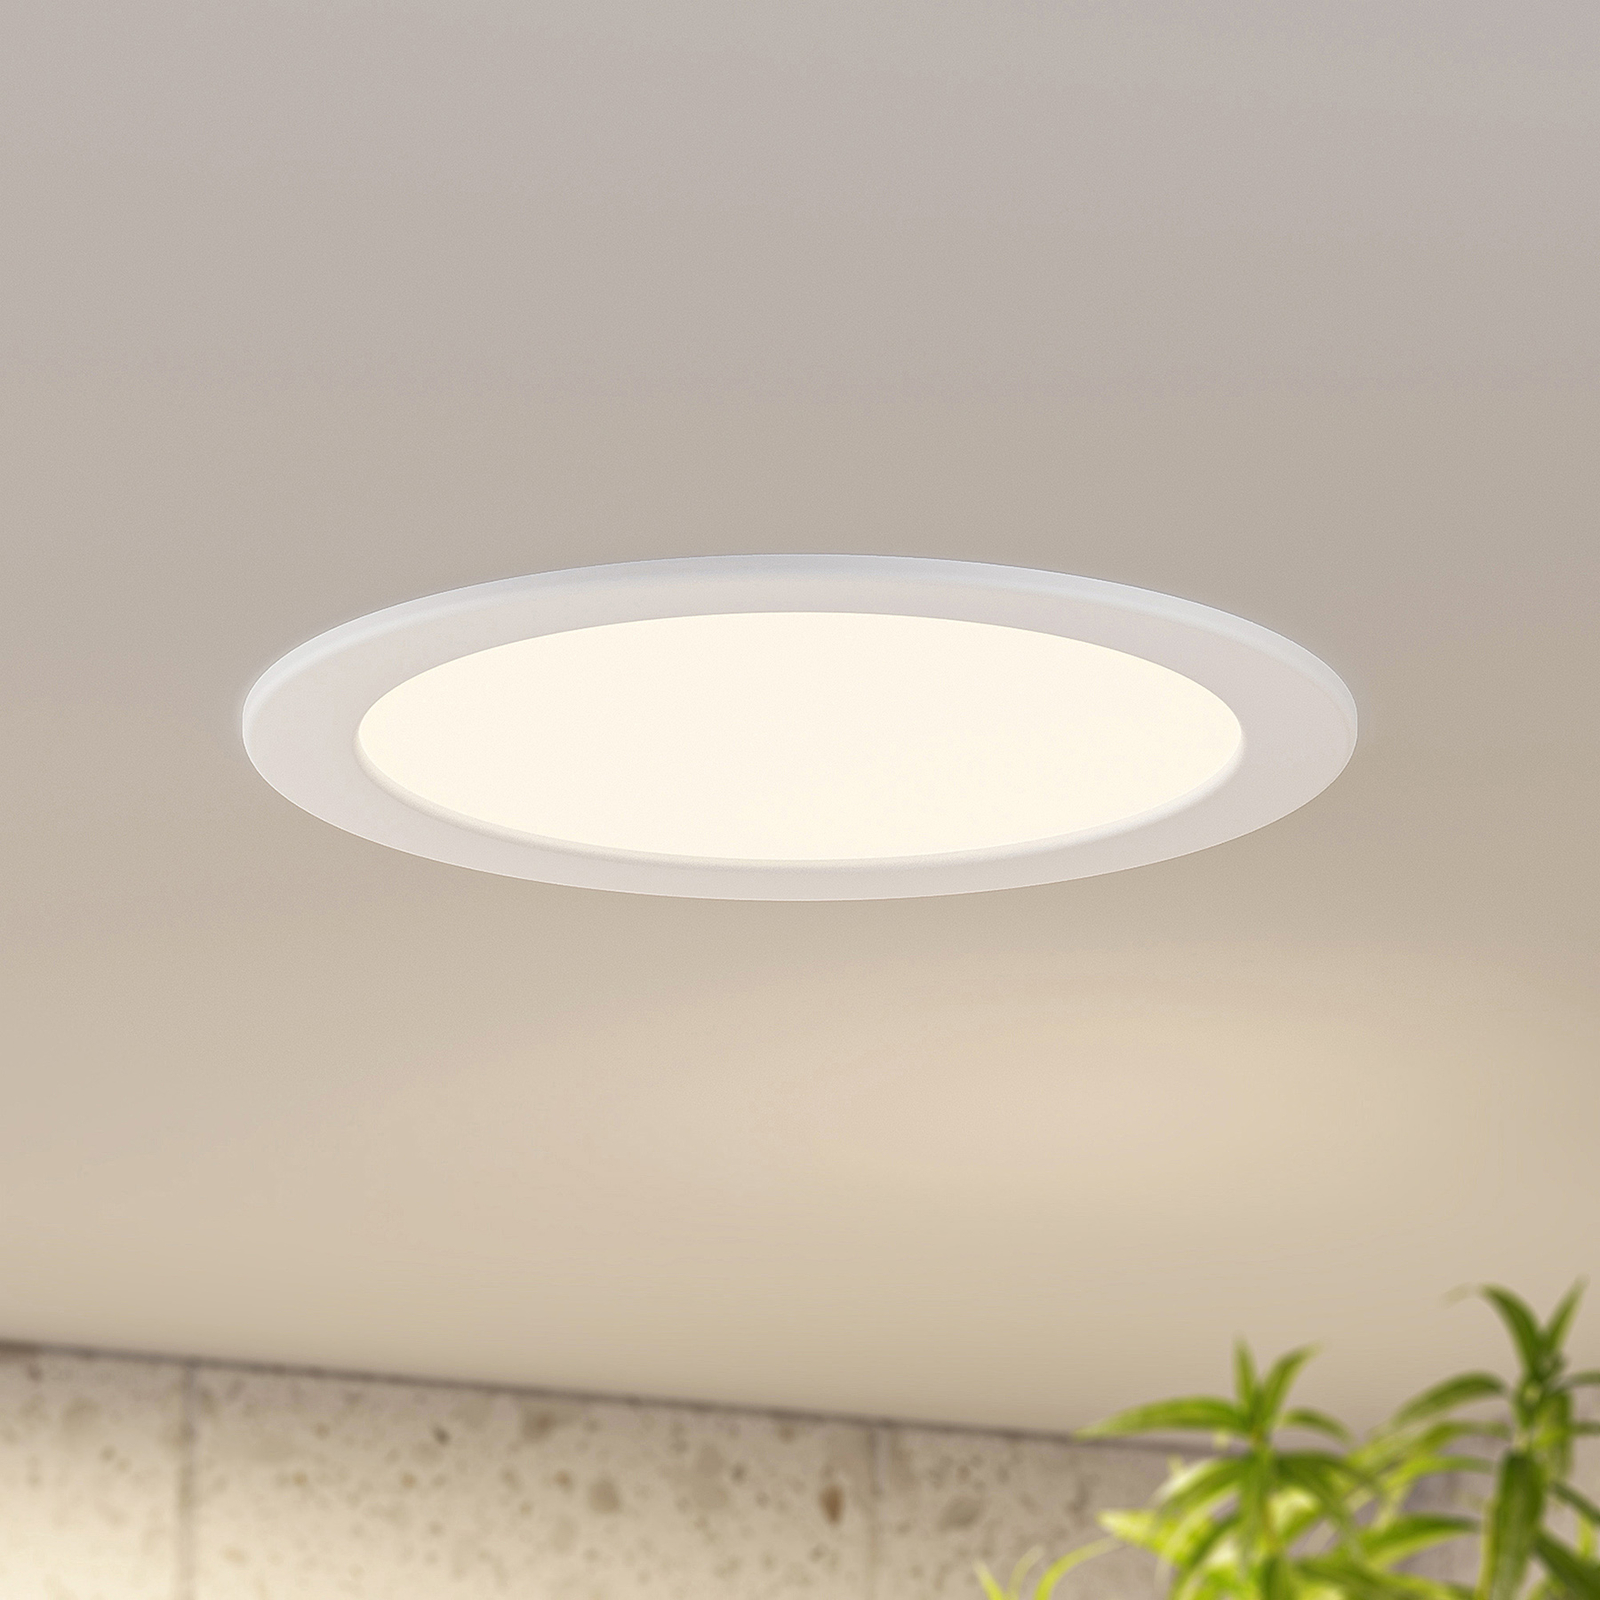 Prios LED svetilka za vgradnjo Cadance, bela, 24 cm, komplet 3 kosov, z